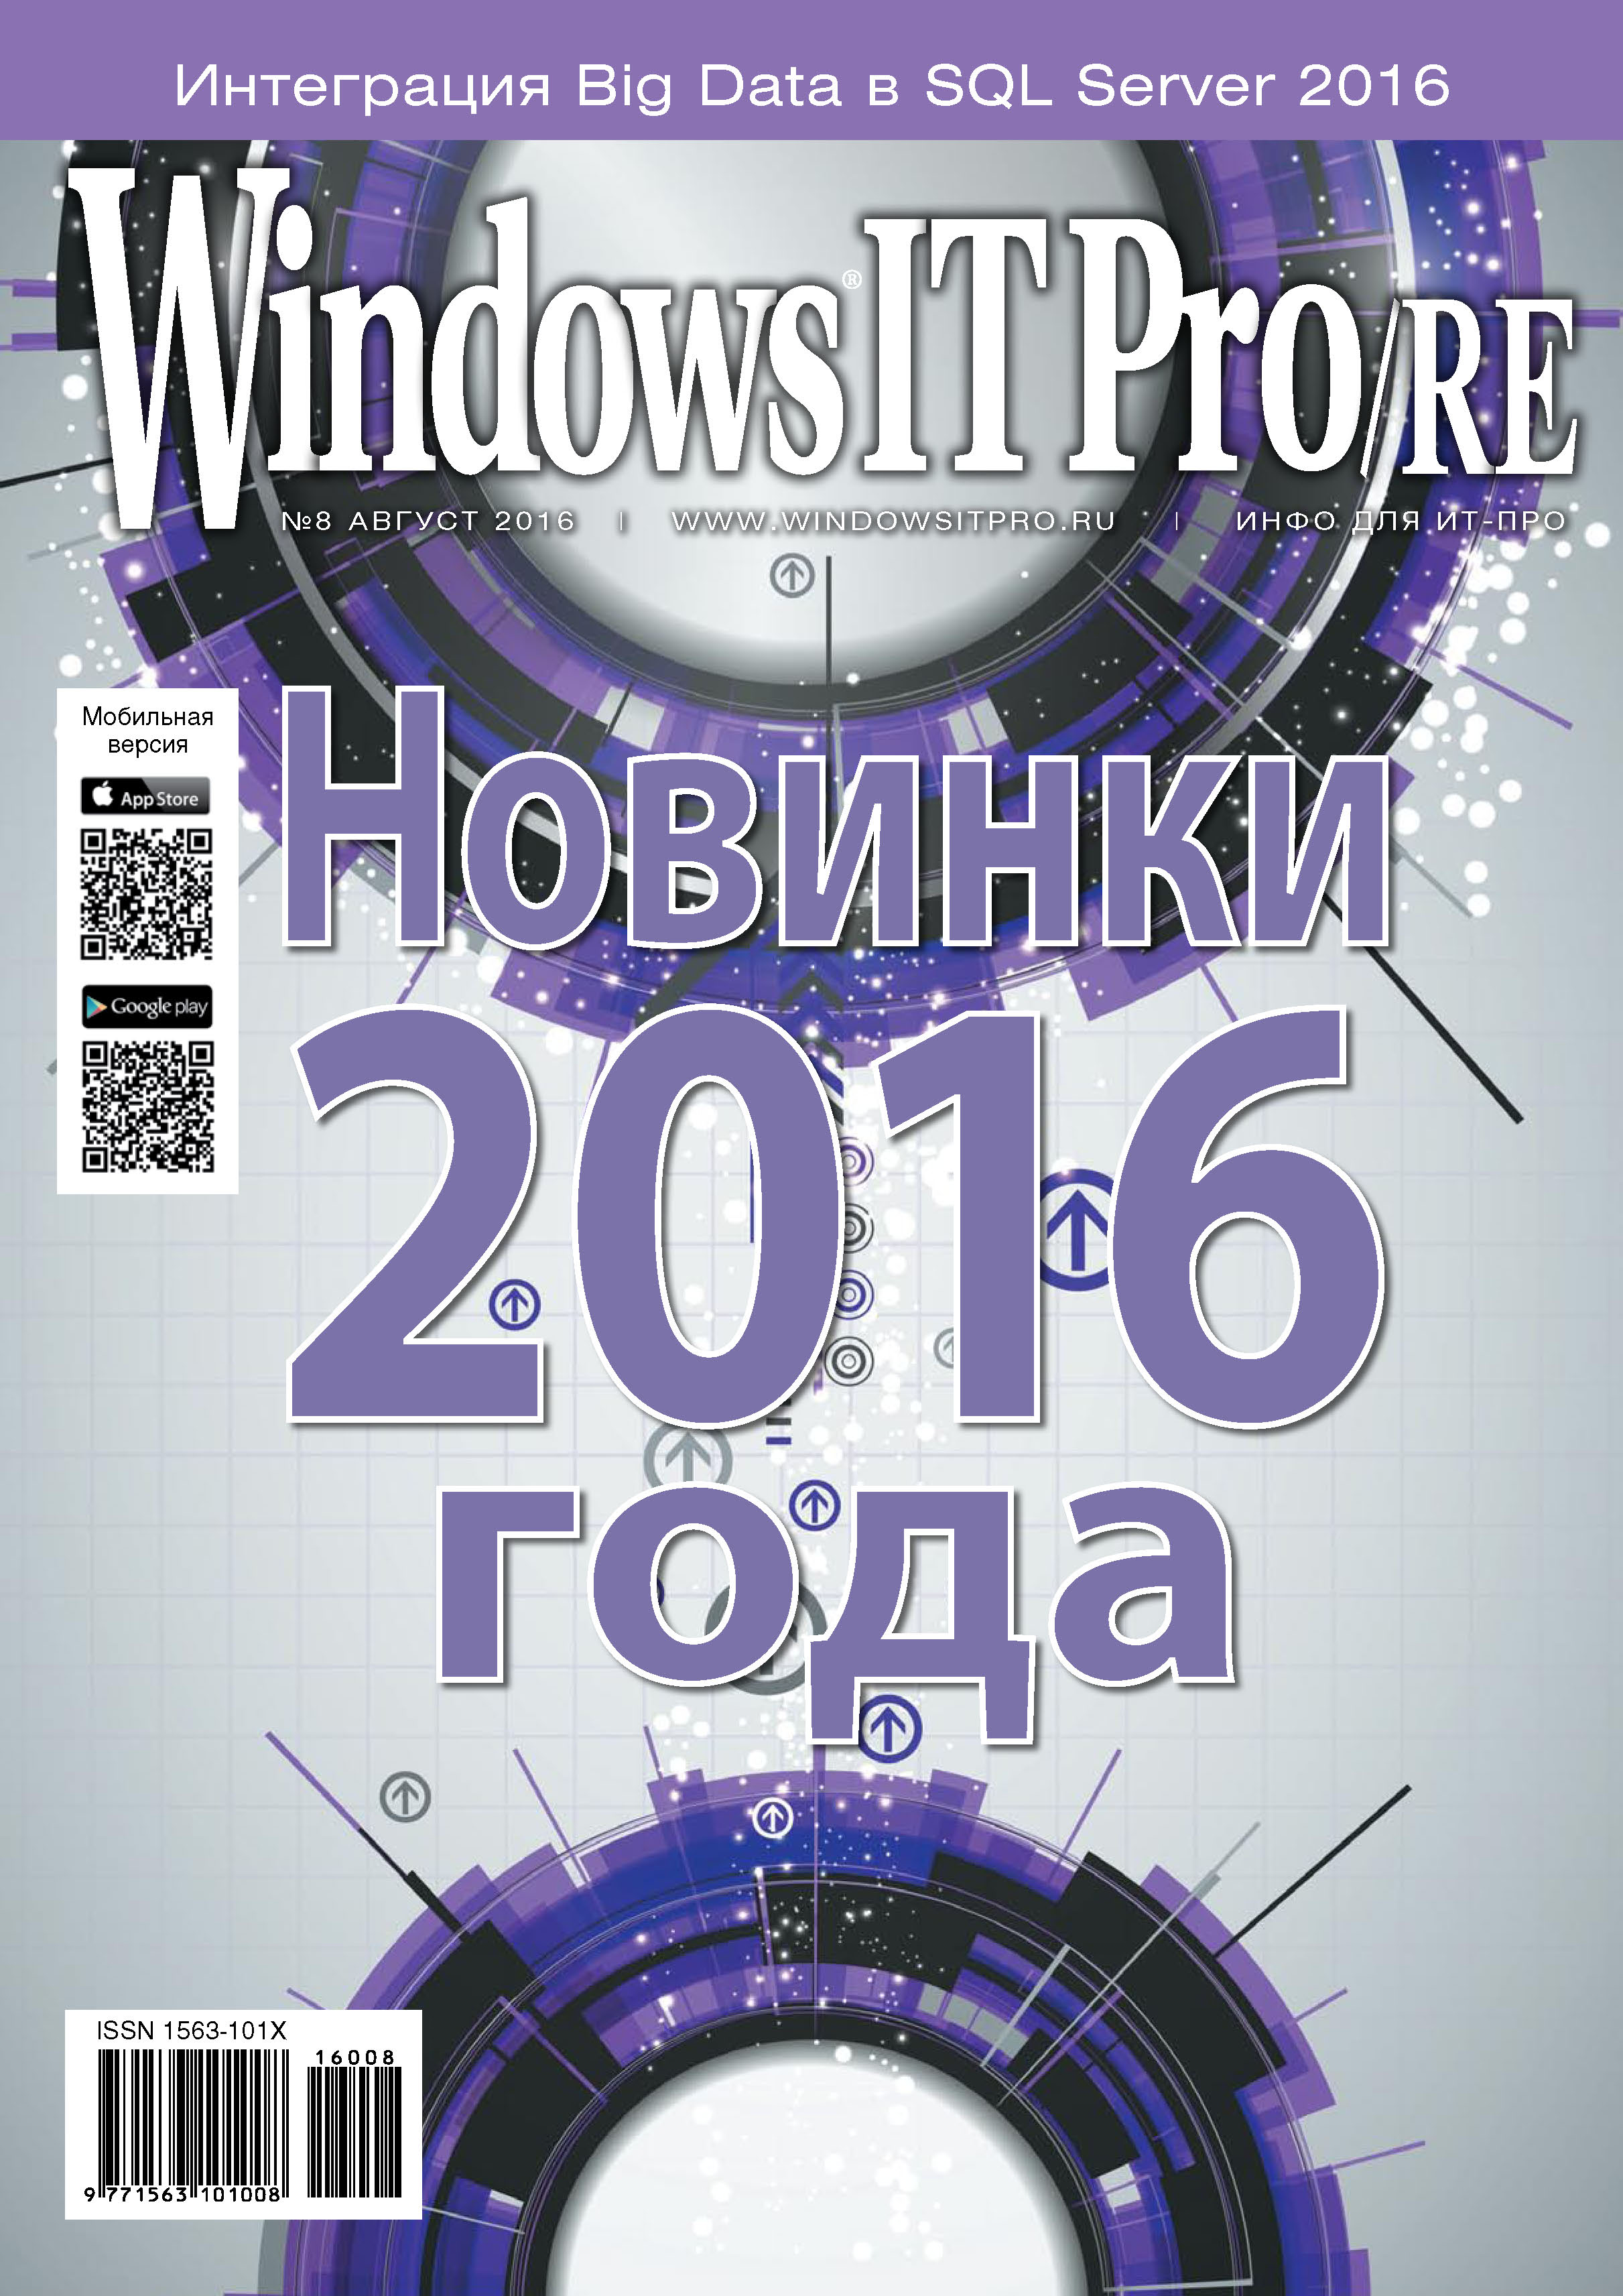 Книга Windows IT Pro 2016 Windows IT Pro/RE №08/2016 созданная Открытые системы может относится к жанру компьютерные журналы, ОС и сети, программы. Стоимость электронной книги Windows IT Pro/RE №08/2016 с идентификатором 20836000 составляет 484.00 руб.